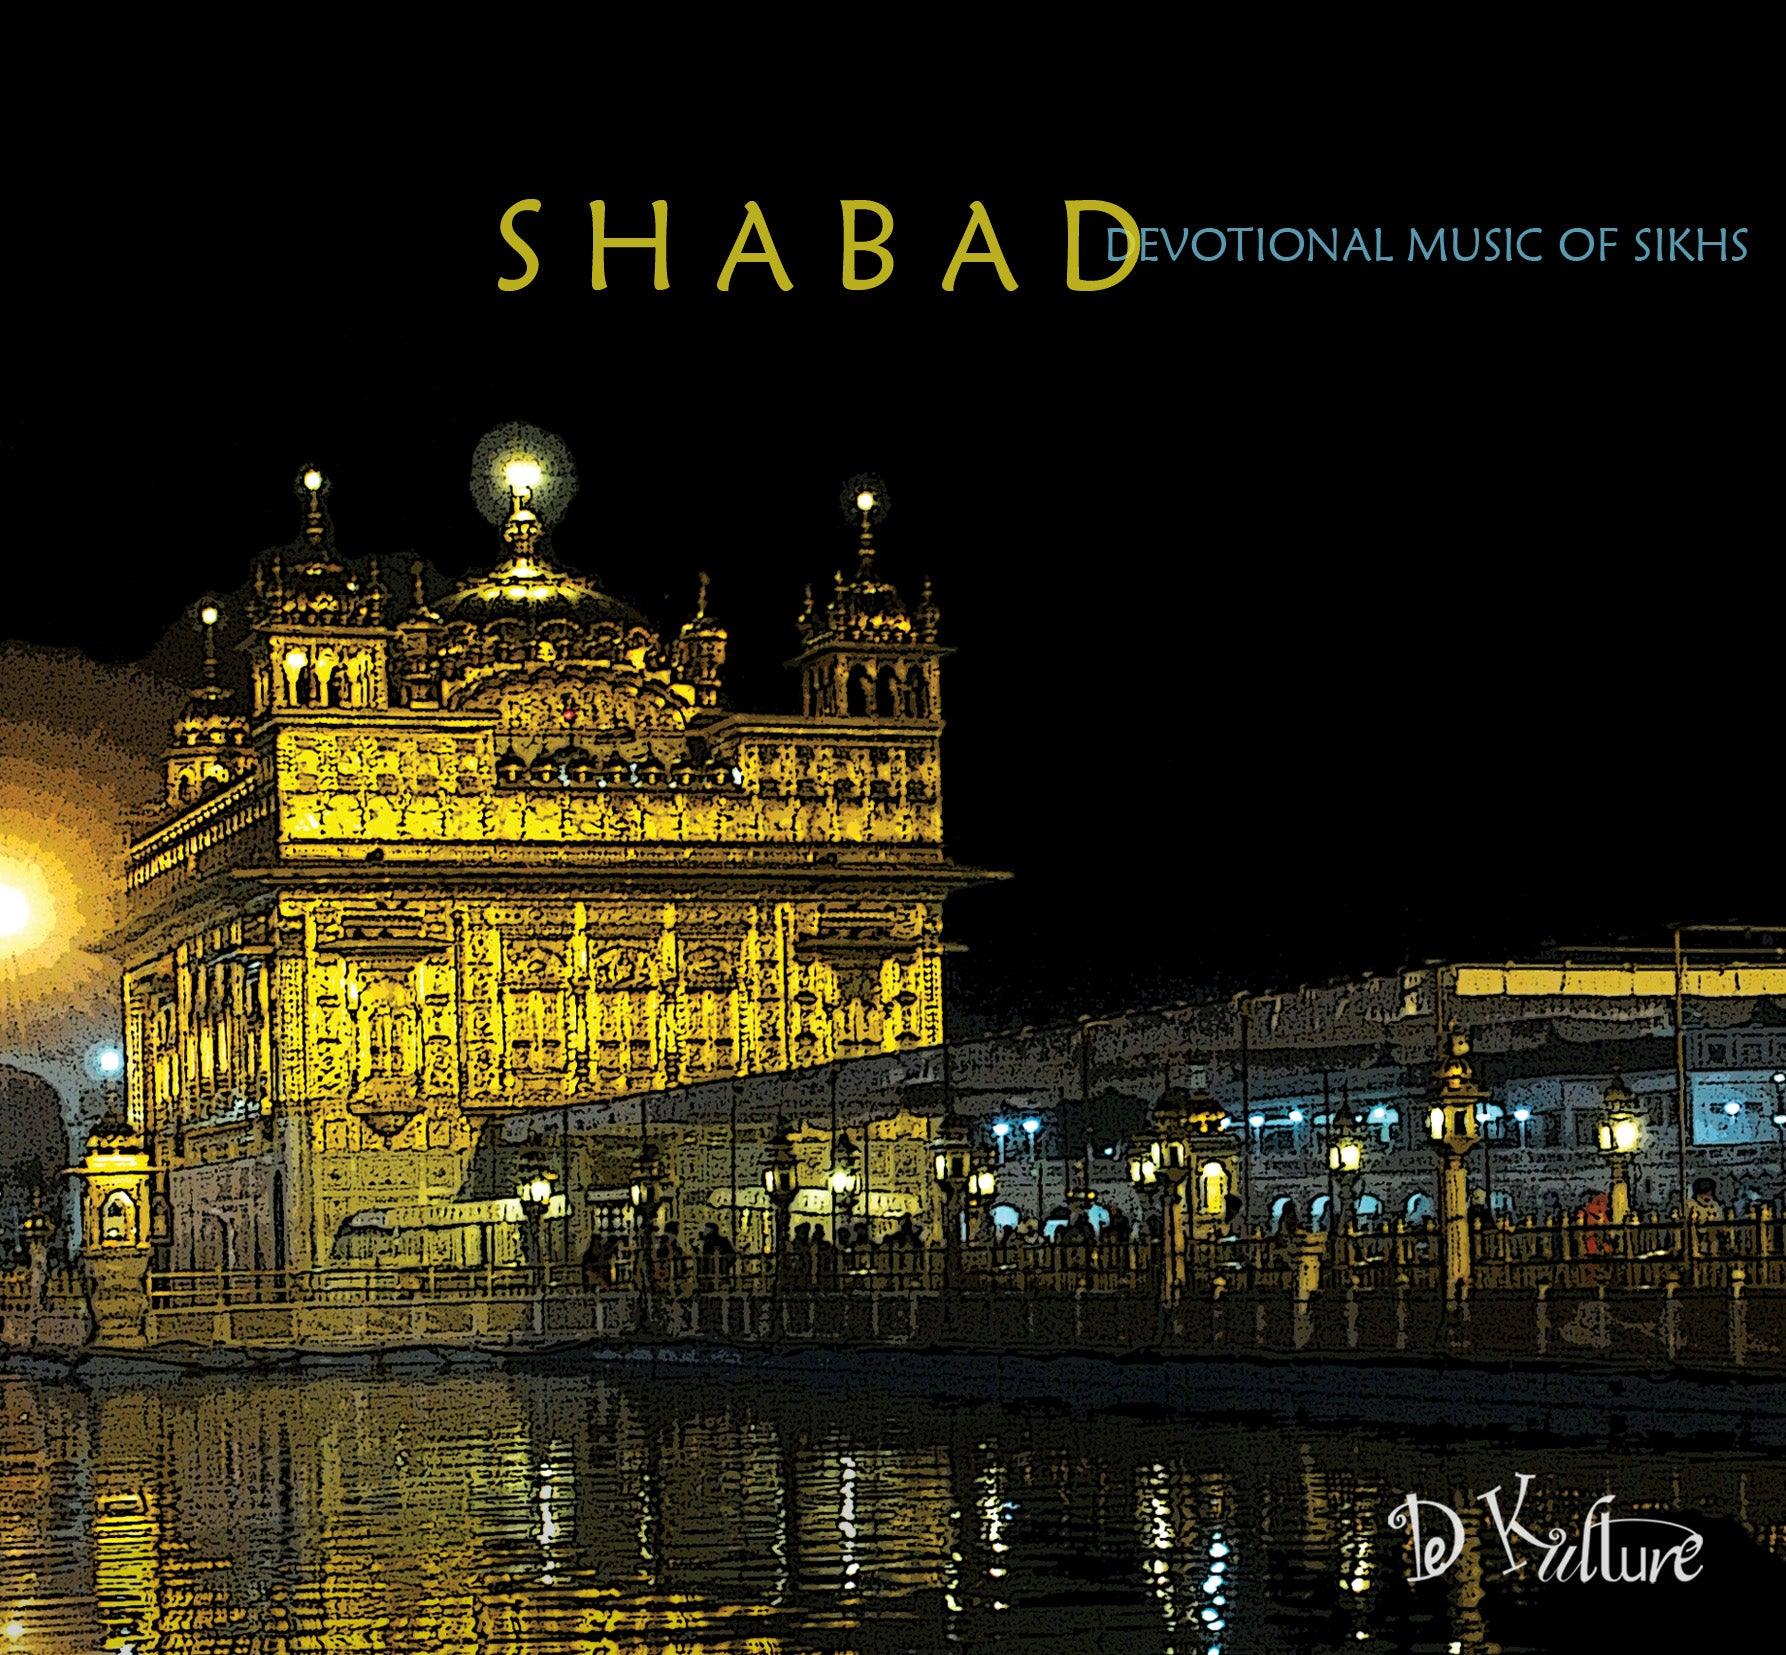 Shabad Punjabi Song CD Instrumental Music - DeKulture DKM-043-A